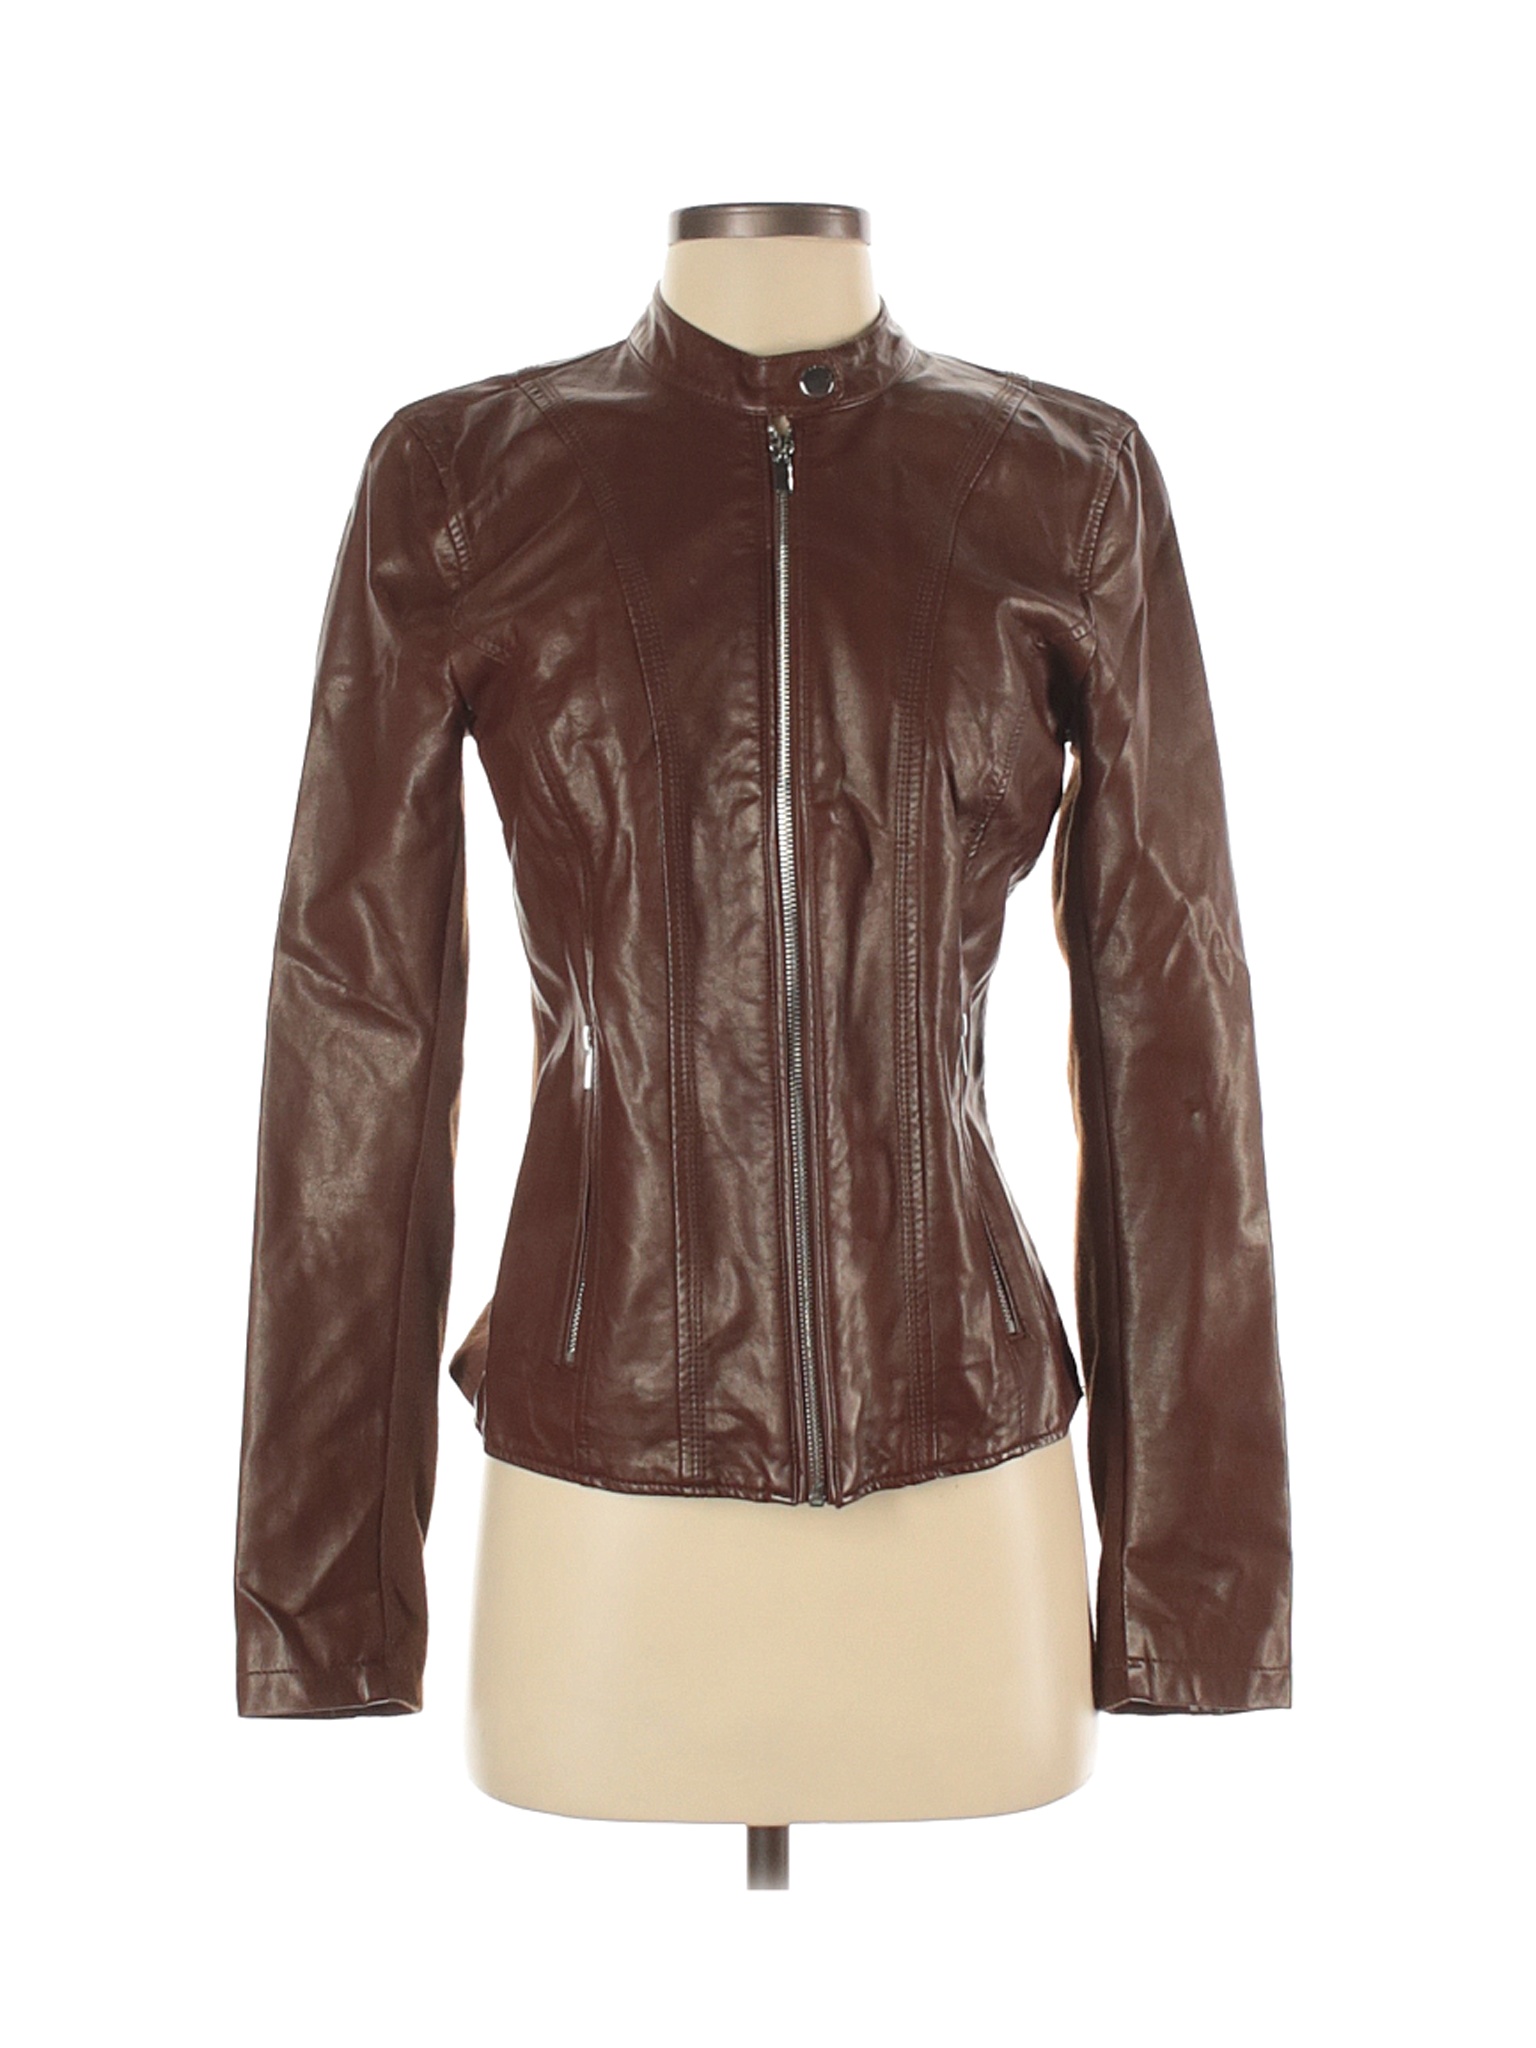 Black Rivet Women Brown Faux Leather Jacket S | eBay